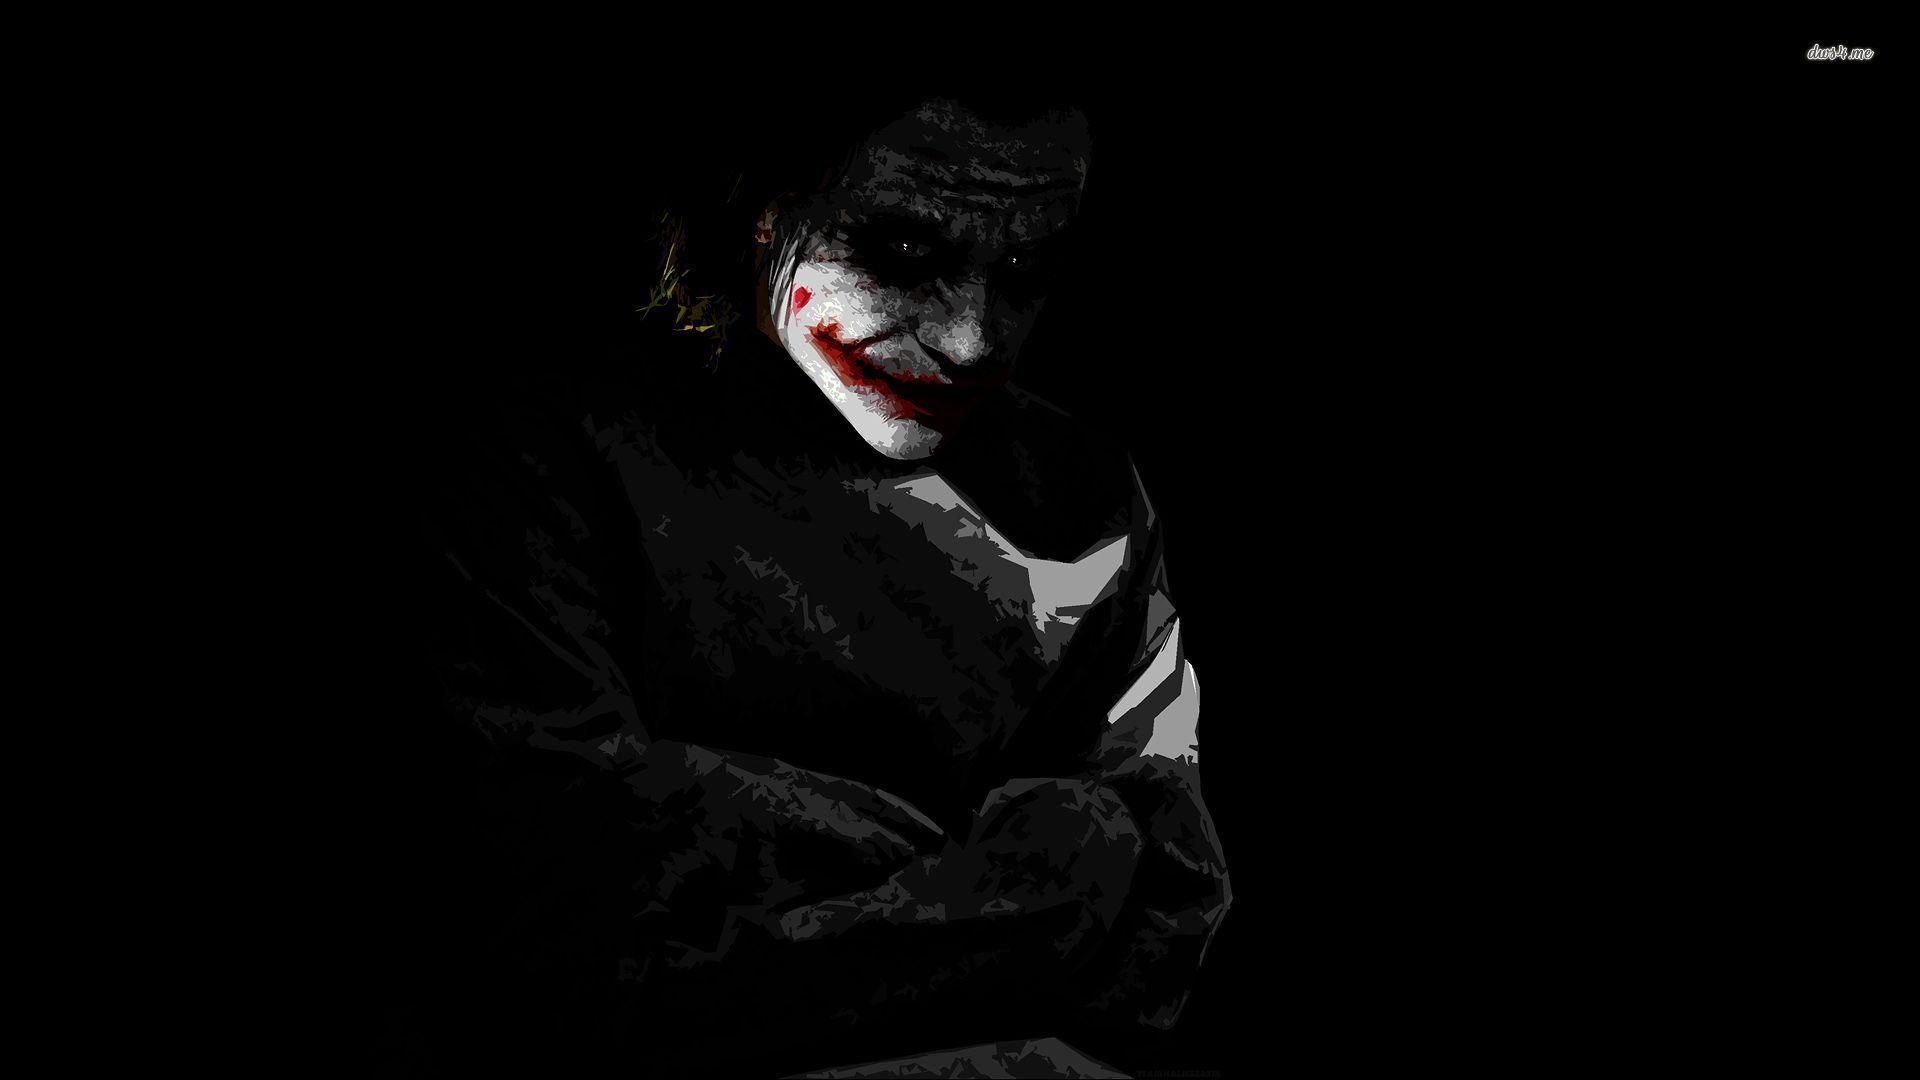 The Dark Knight - Joker wallpaper - Movie wallpapers - #6185